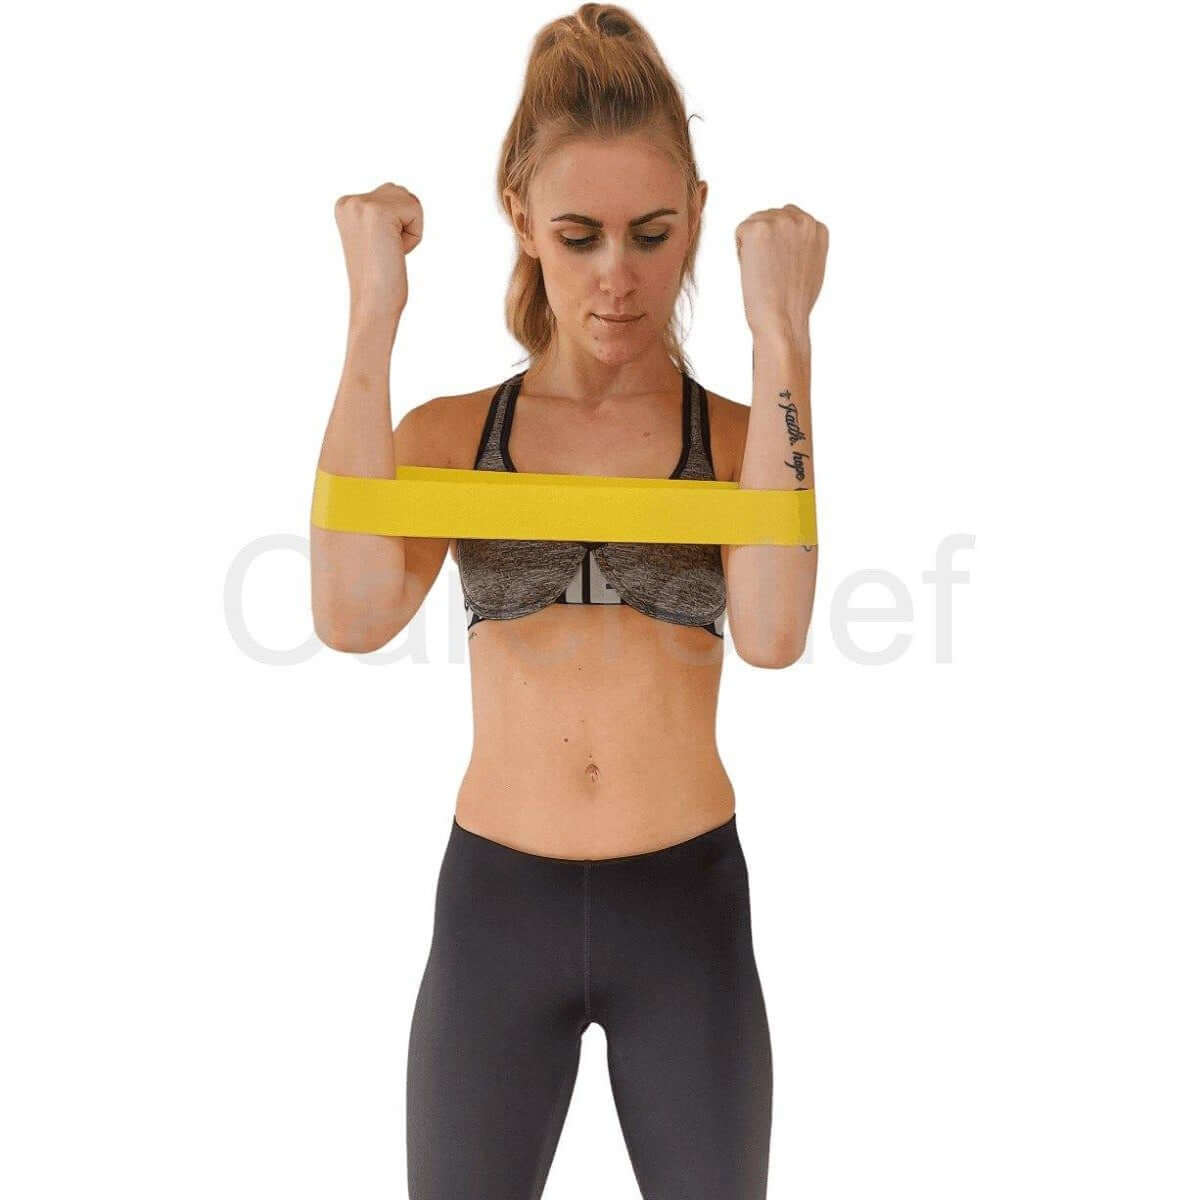 Træningselastikker 5-pack - Køb resistance bands - 5 styrker - Træn mave, baller, arme, ben, lår og ryg med elastik - Billig pris